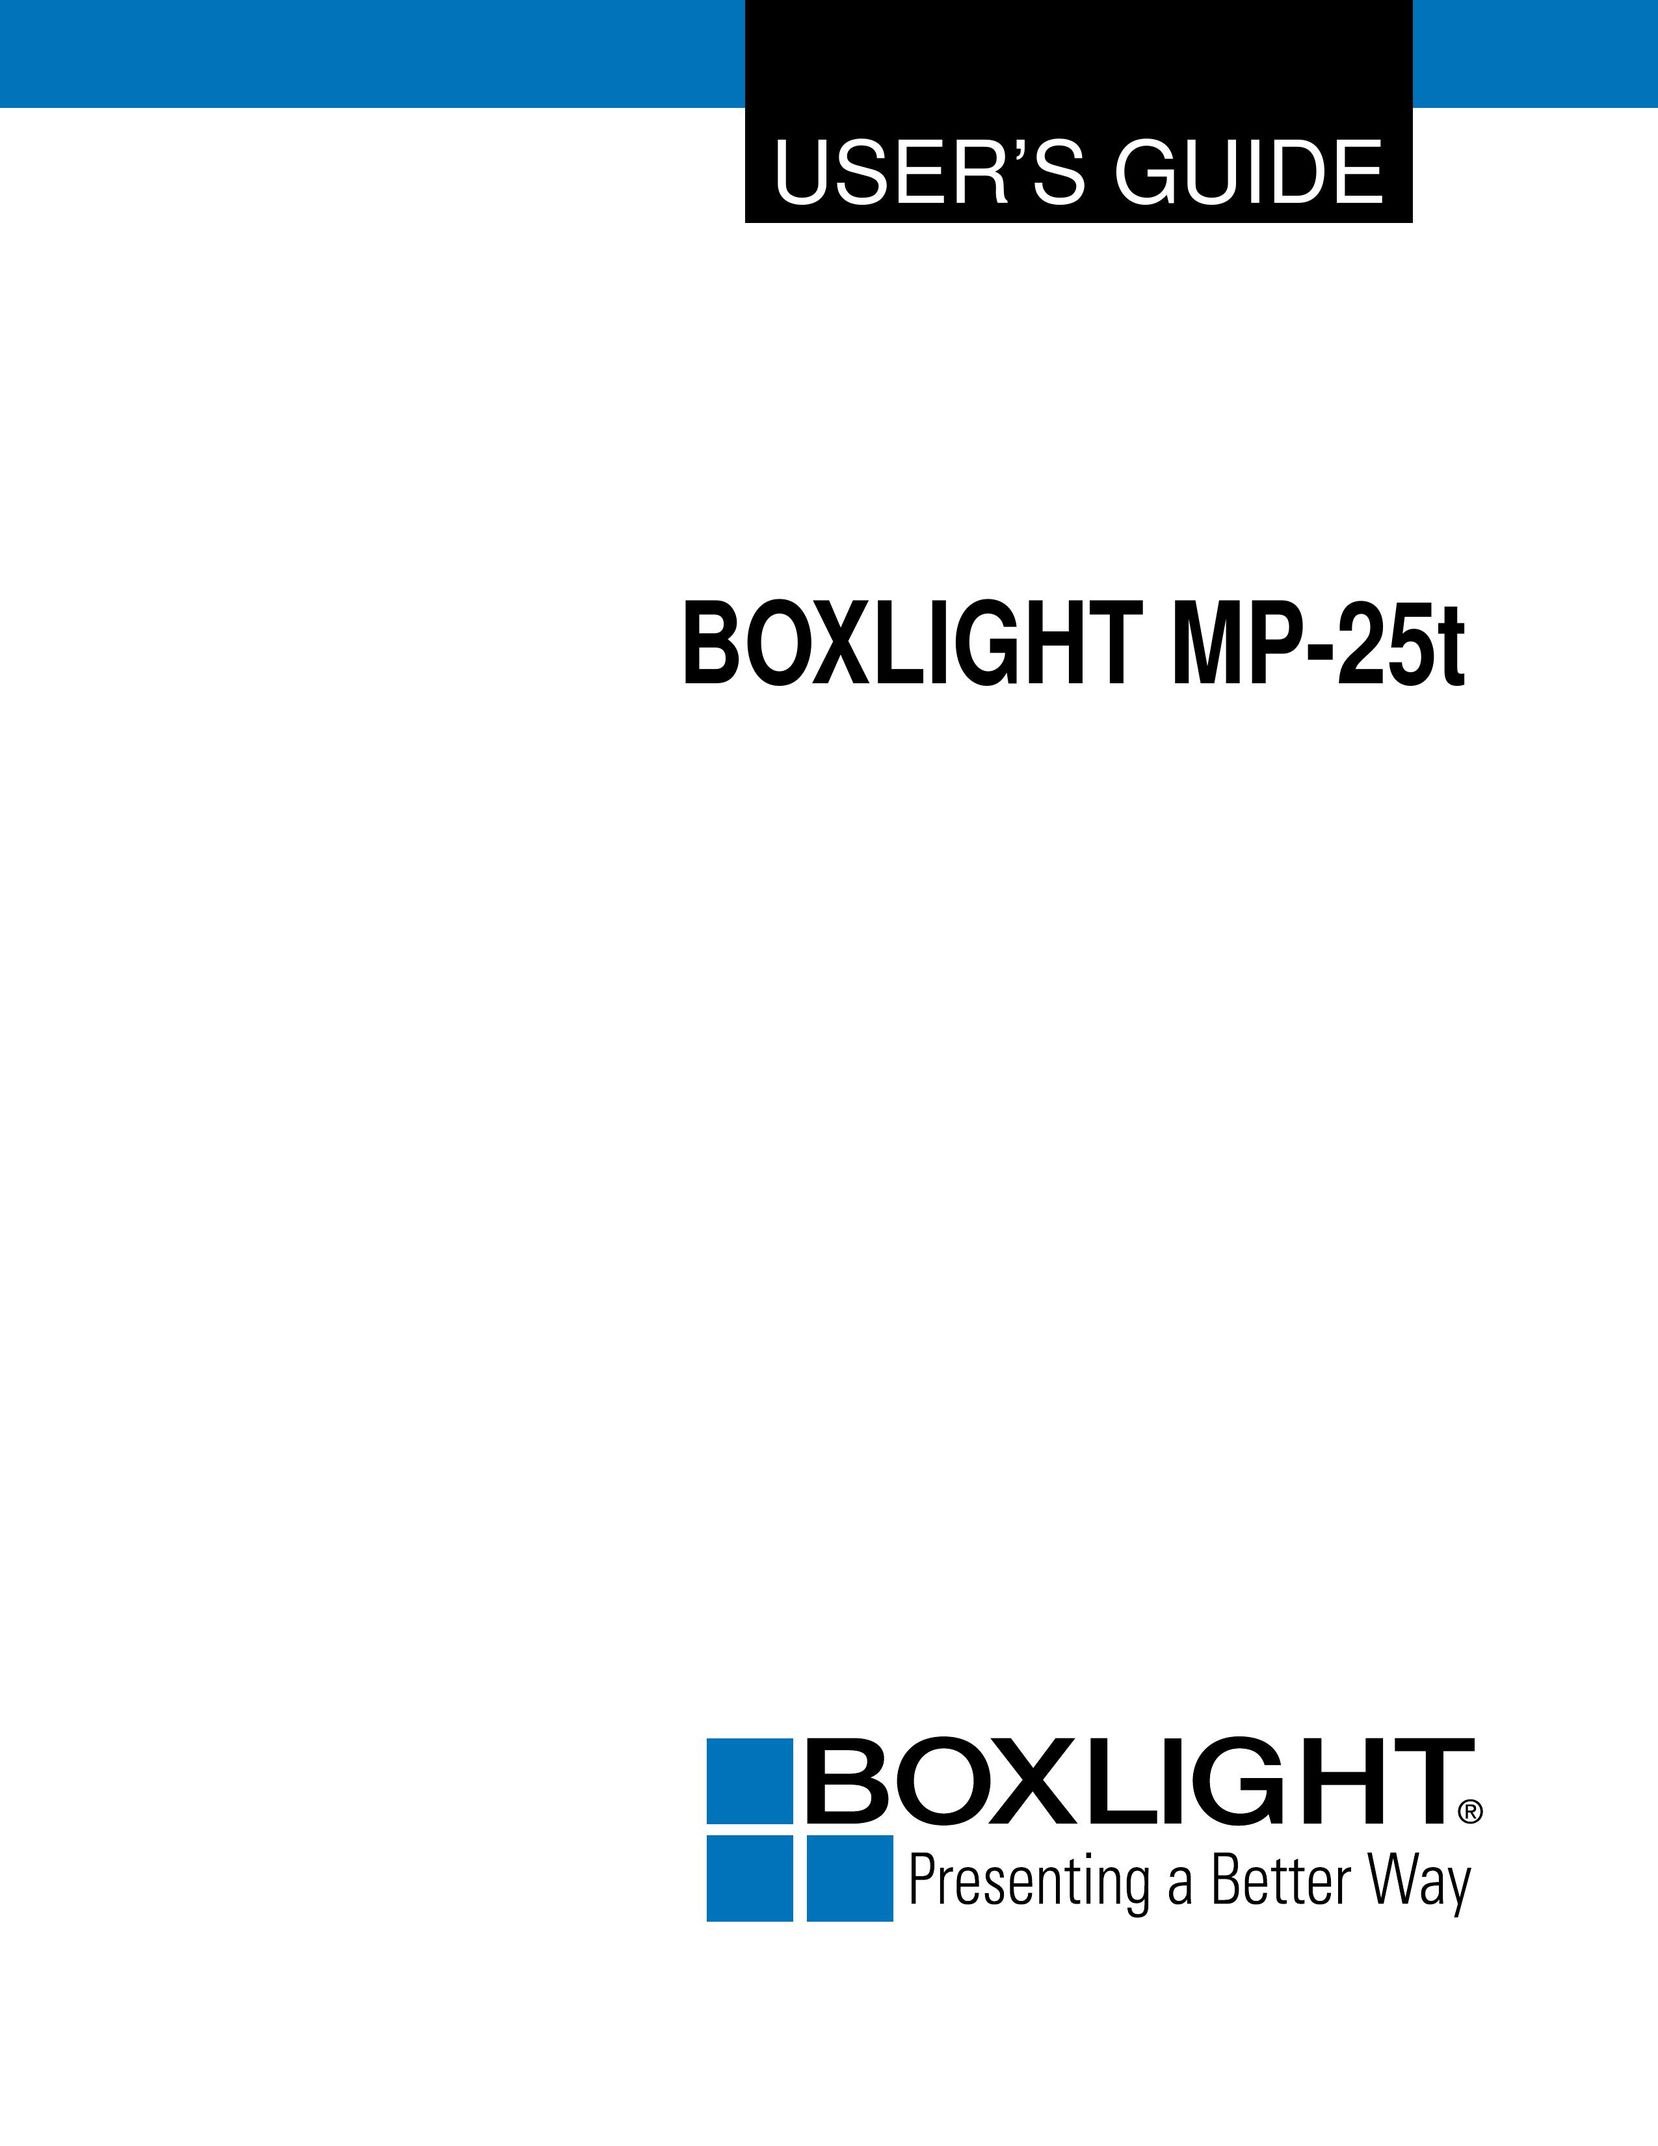 BOXLIGHT MP-25t Projector User Manual